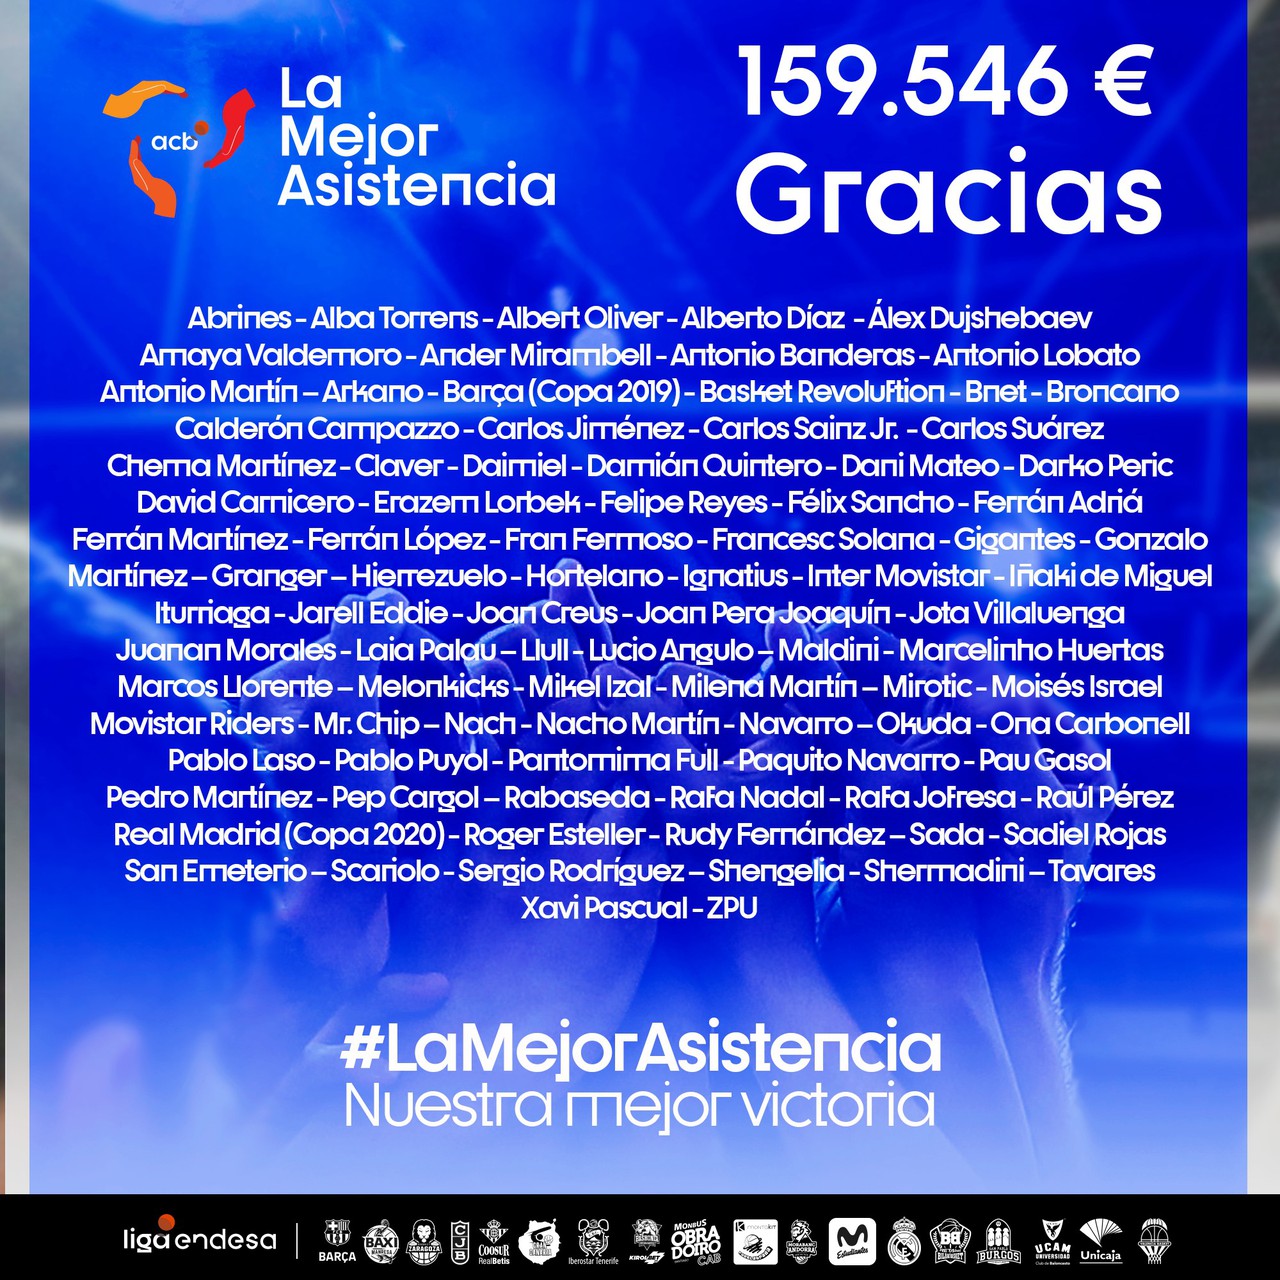 Junts hem donat #LaMejorAsistencia: 159.546 euros per pal·liar els efectes del coronavirus